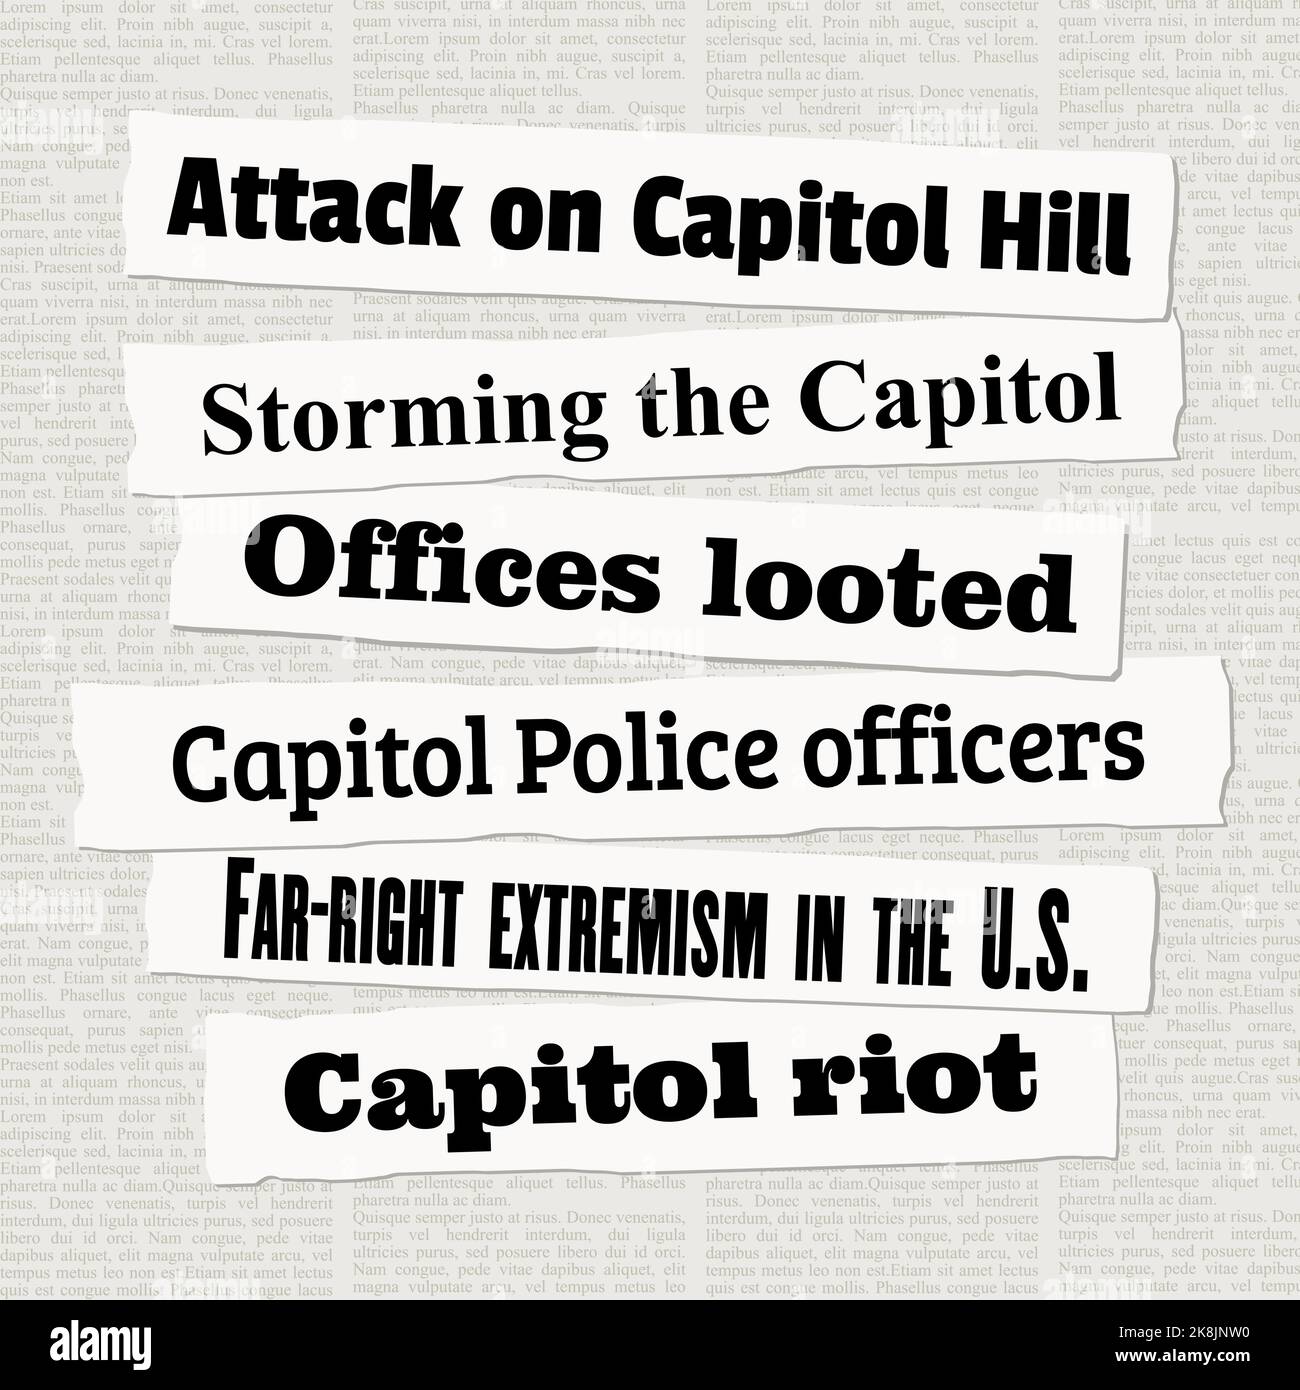 NOTIZIE di attacco del Campidoglio DEGLI STATI UNITI. Ritagli di giornale su Capitol Hill e la sommossa del Campidoglio. Illustrazione Vettoriale